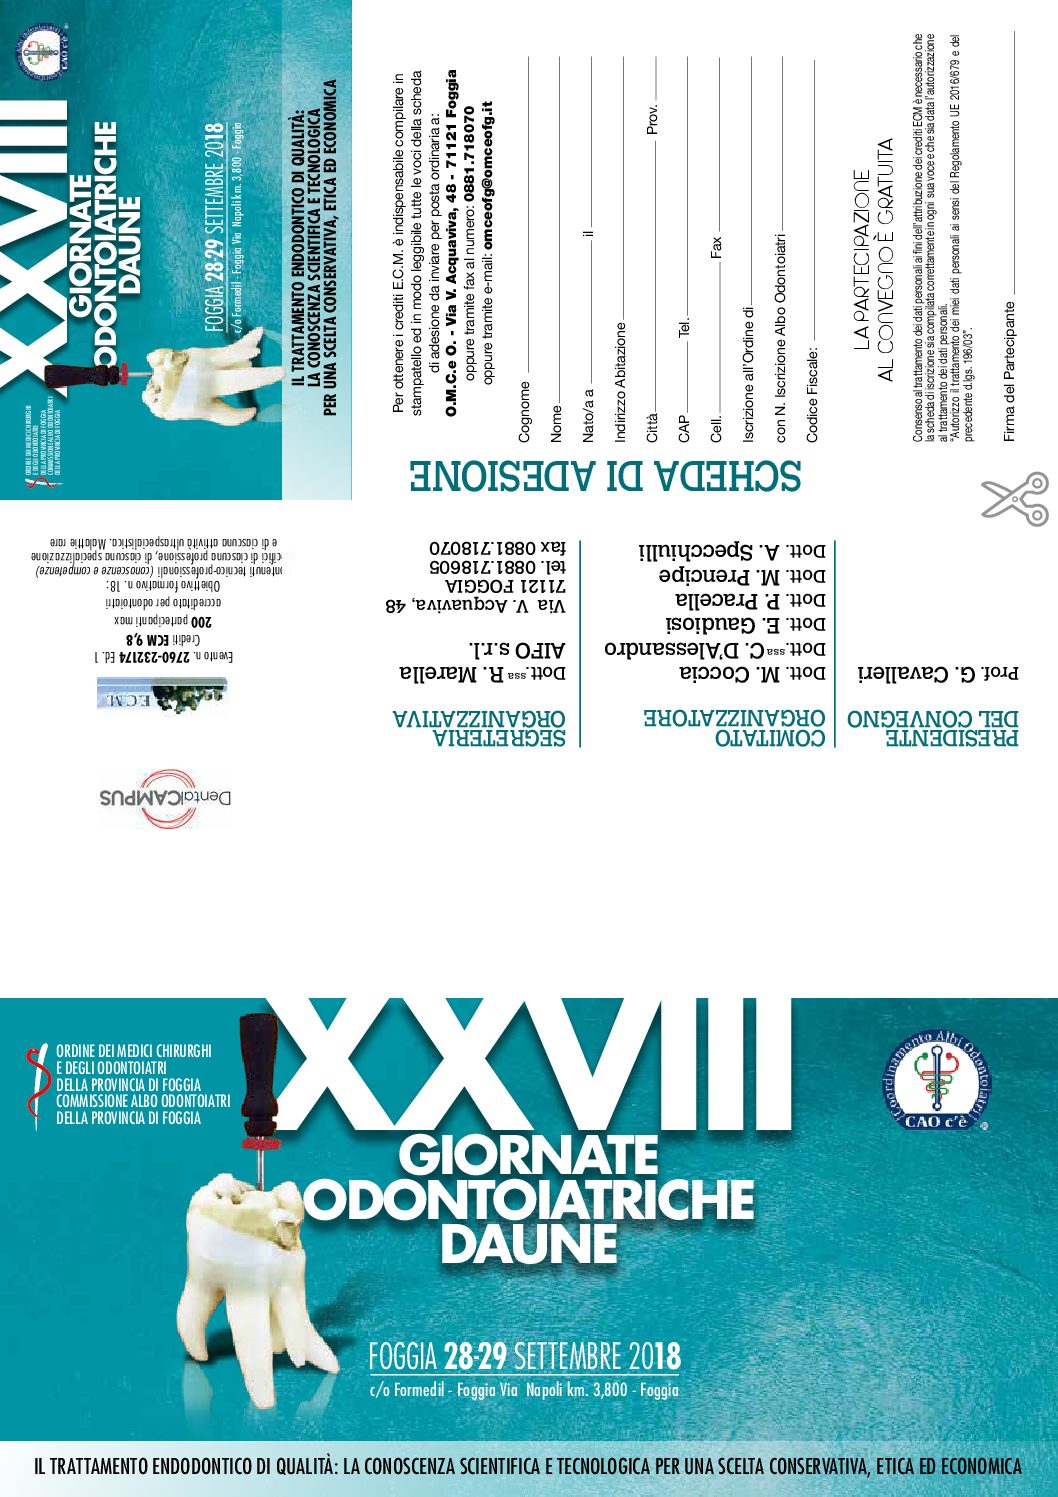 XXVIII Giornate Odontoiatriche Daune “Il trattamento endodontico di qualità: la conoscenza scientifica e tecnologica per una scelta conservativa, etica ed economica”